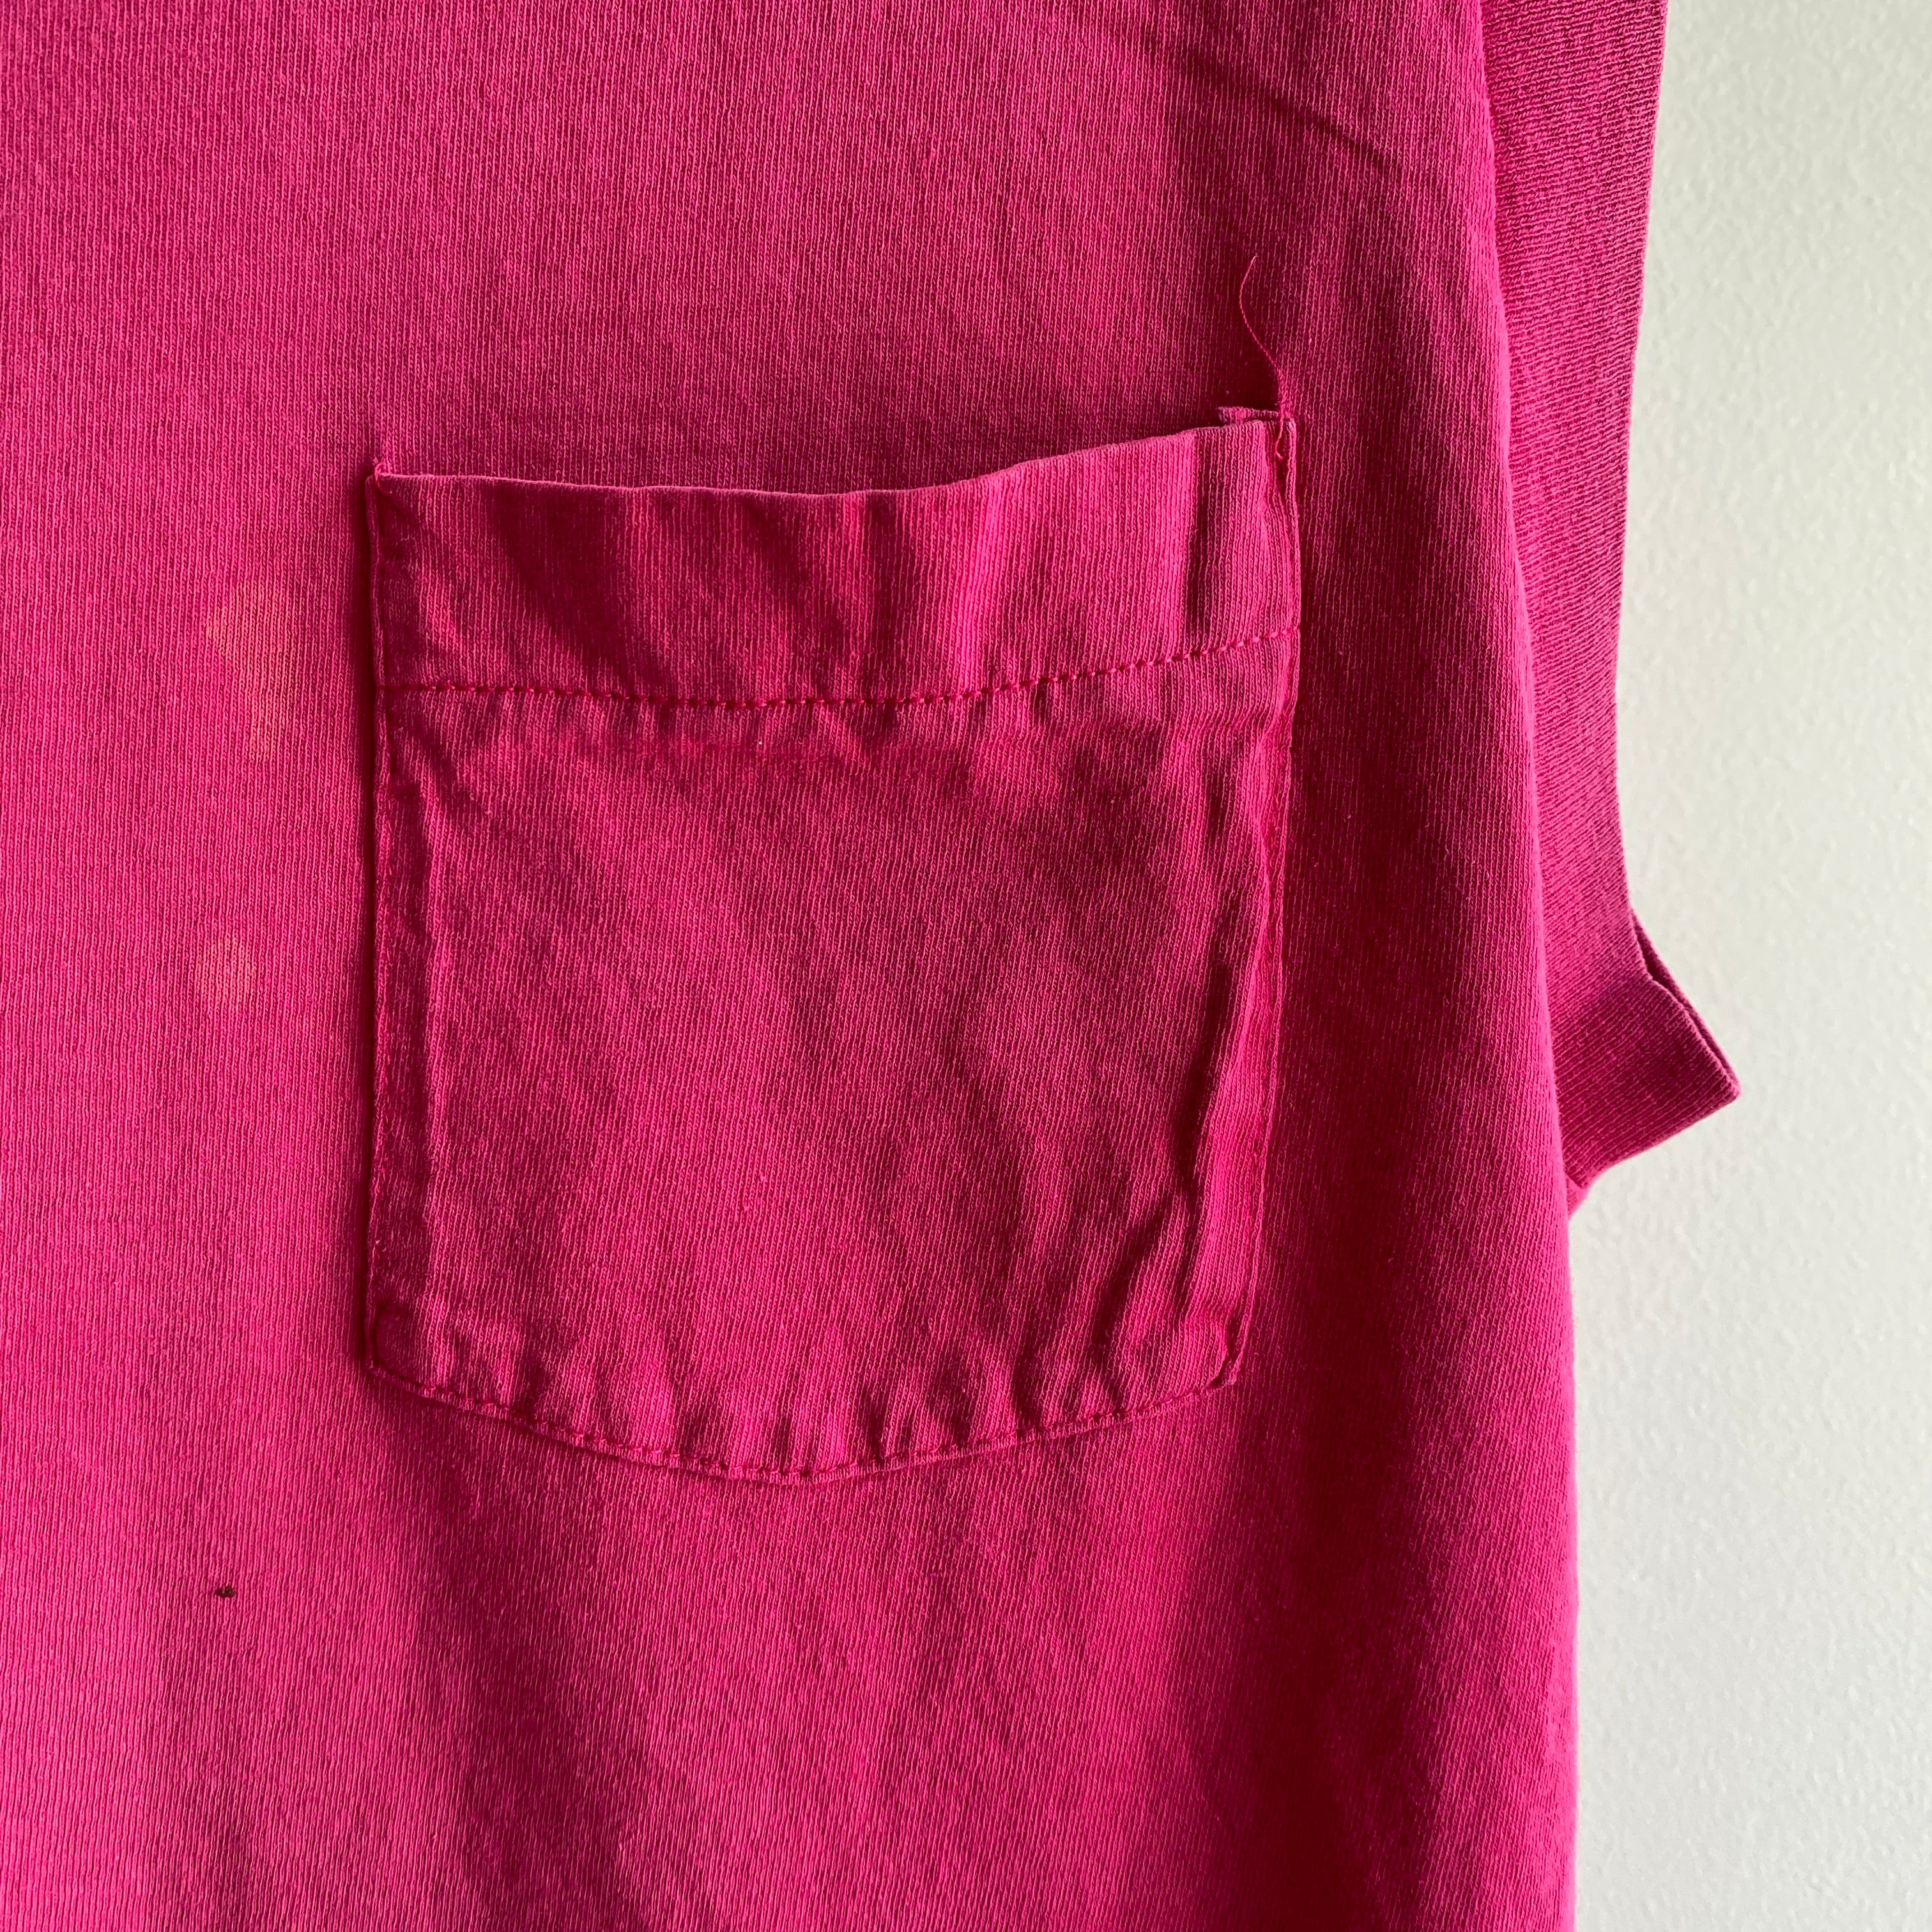 Débardeur musclé rose magenta des années 1980 avec poche